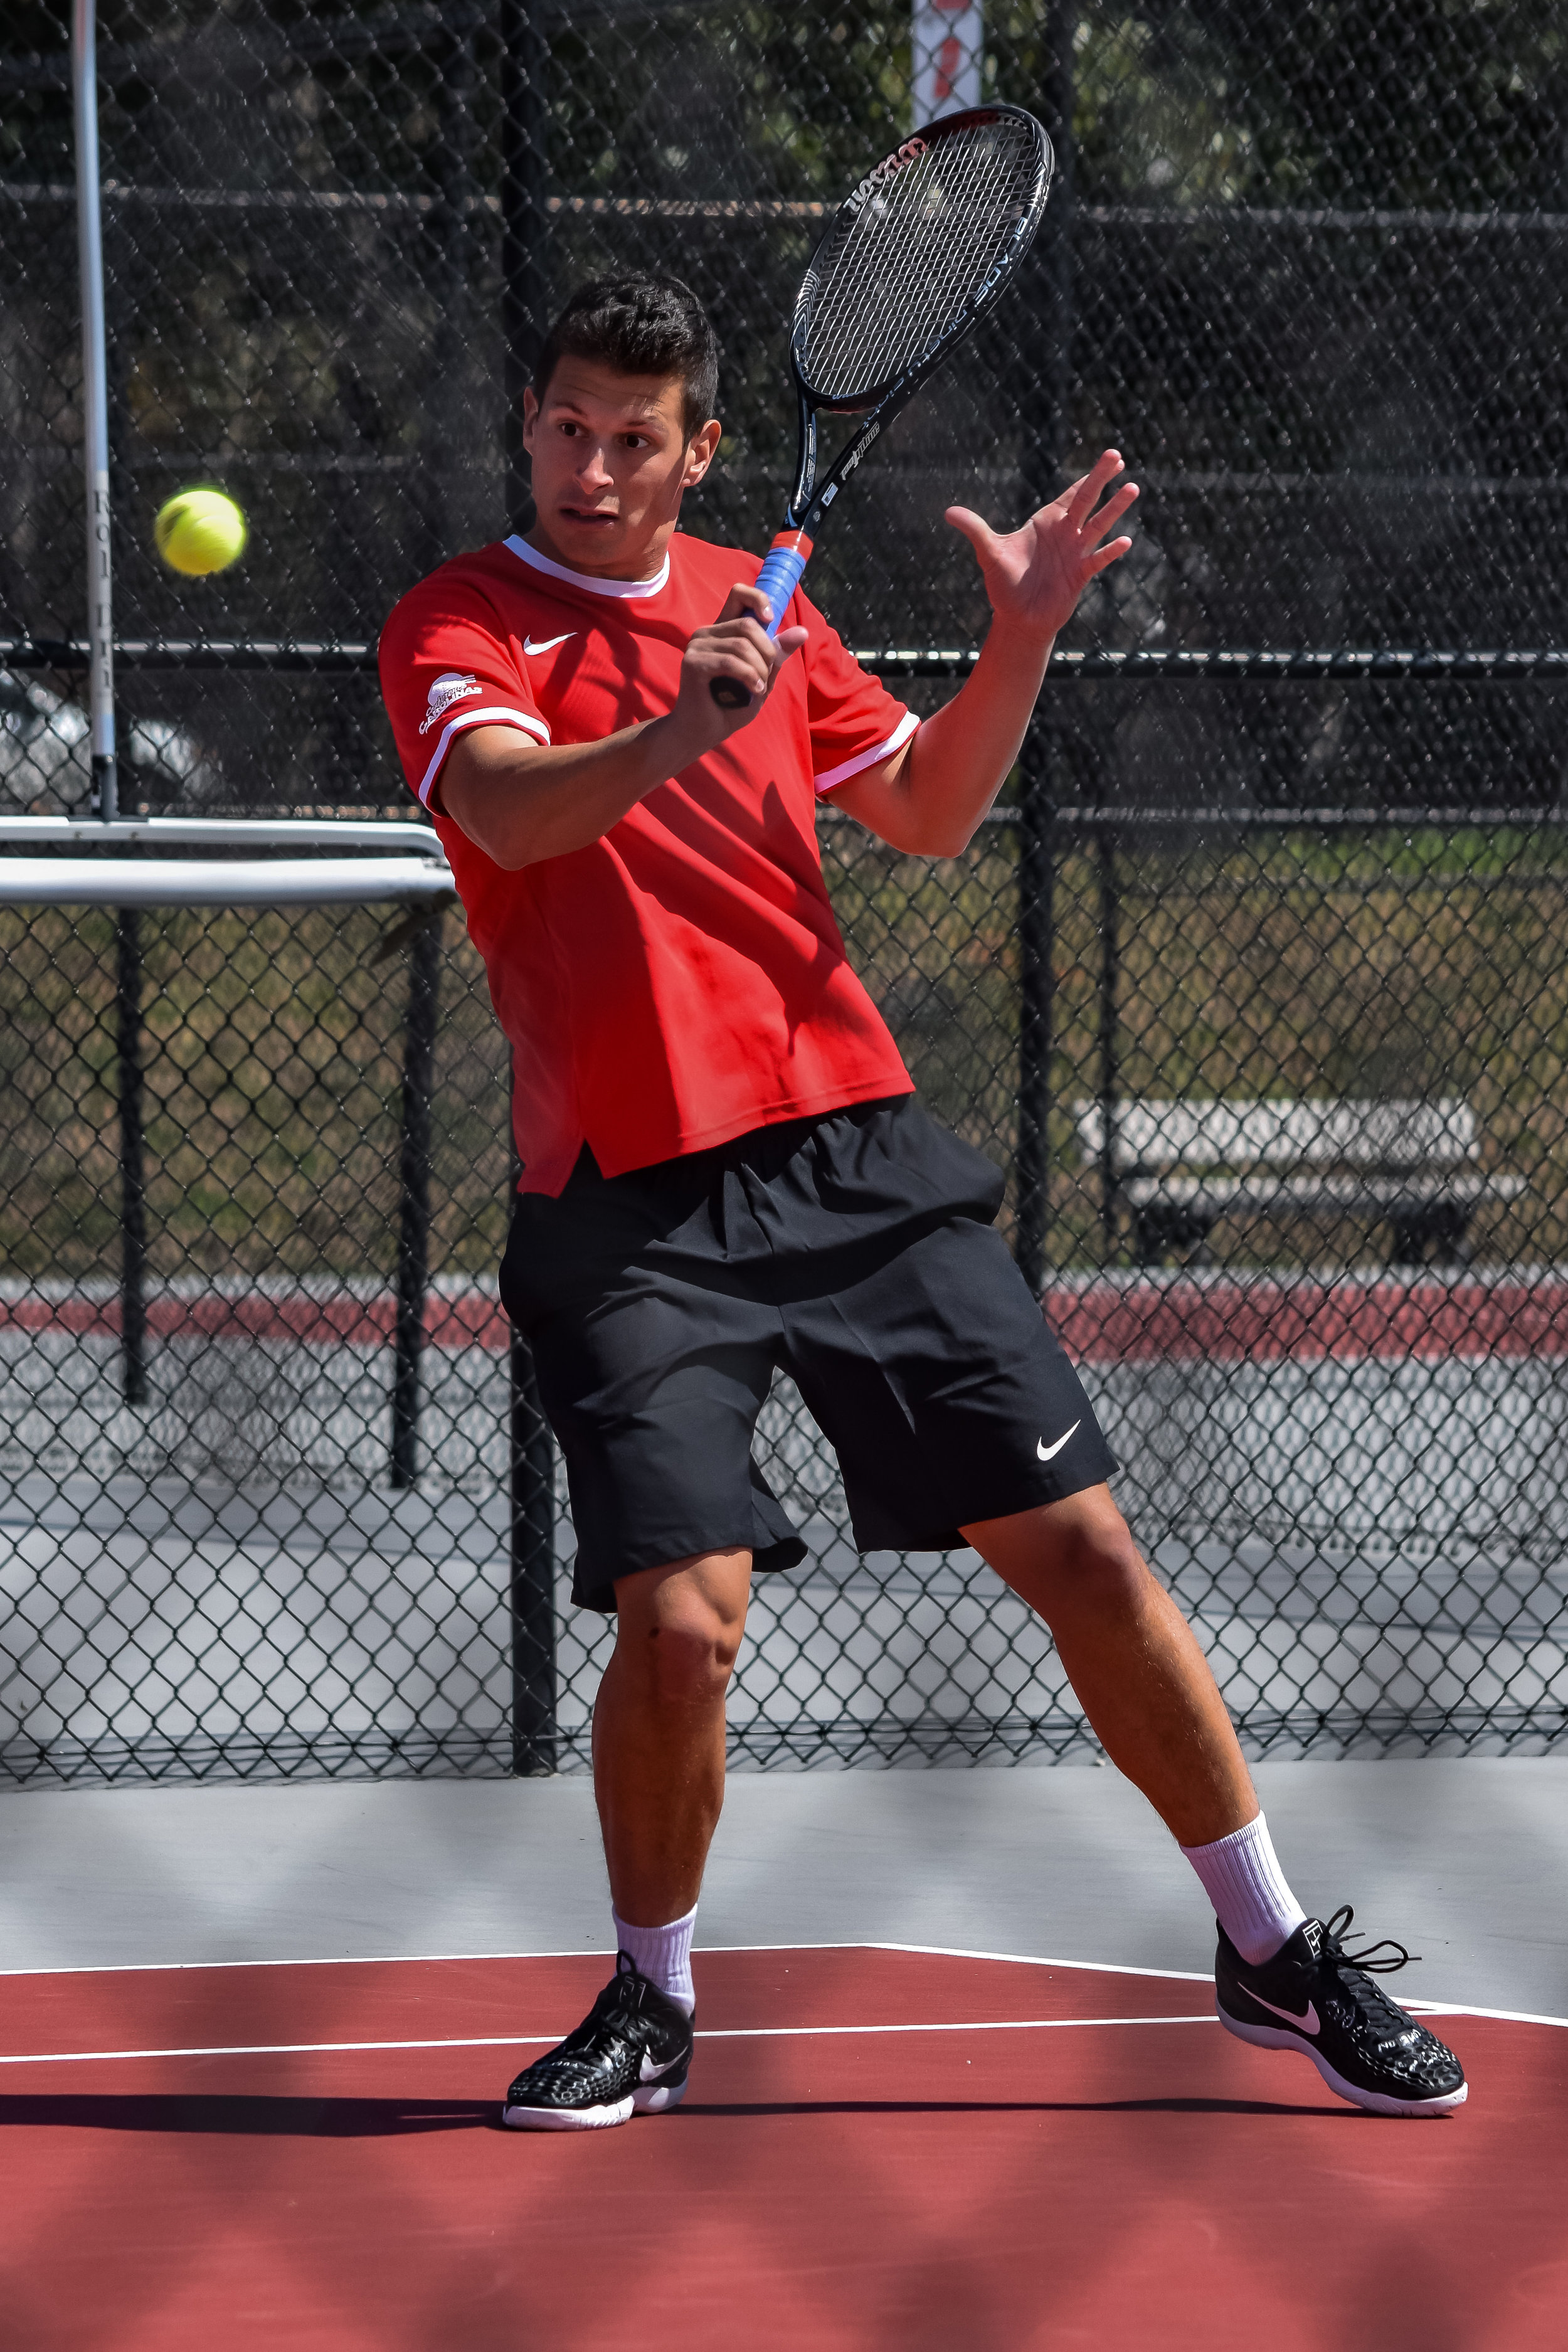 Freshman Giacomo Garini makes some wild faces while playing tennis.